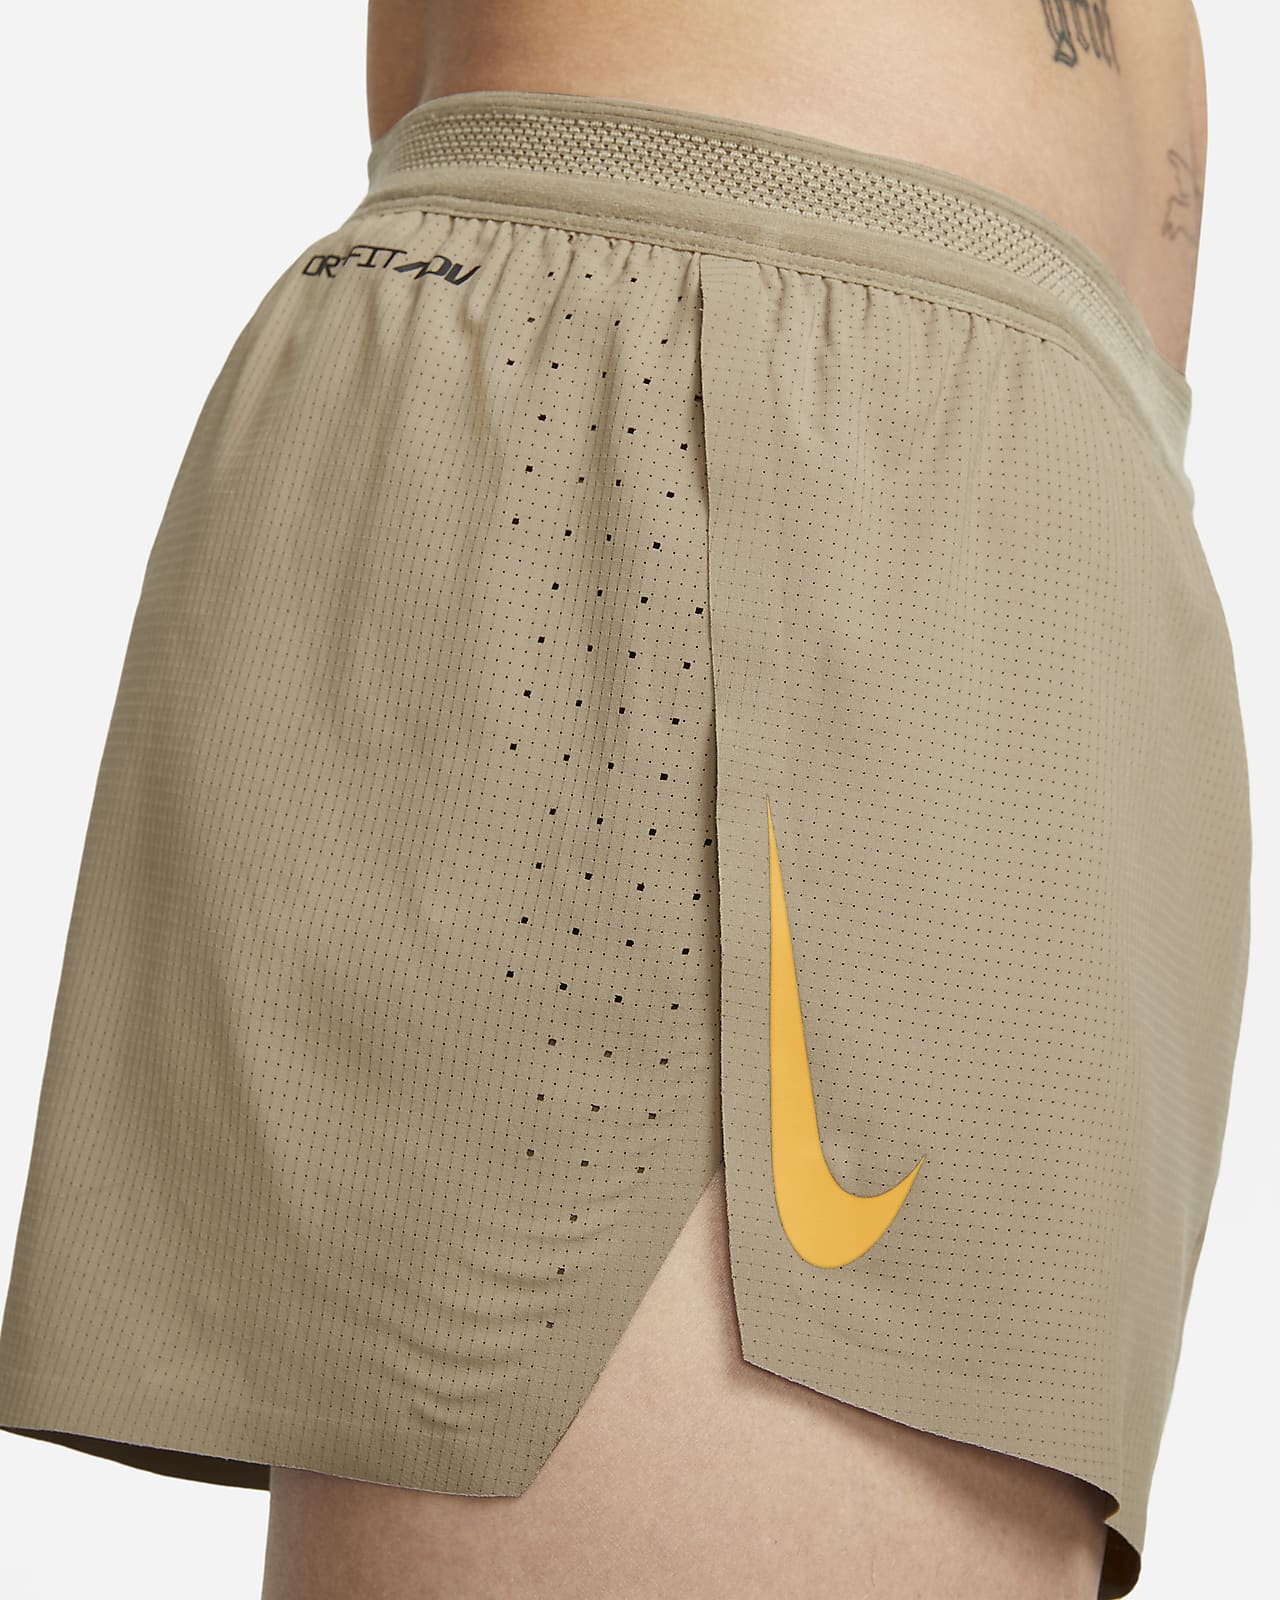 Verloren hart Gecomprimeerd Verslaafd Nike AeroSwift Men's 5cm (approx.) Brief-Lined Racing Shorts. Nike BE